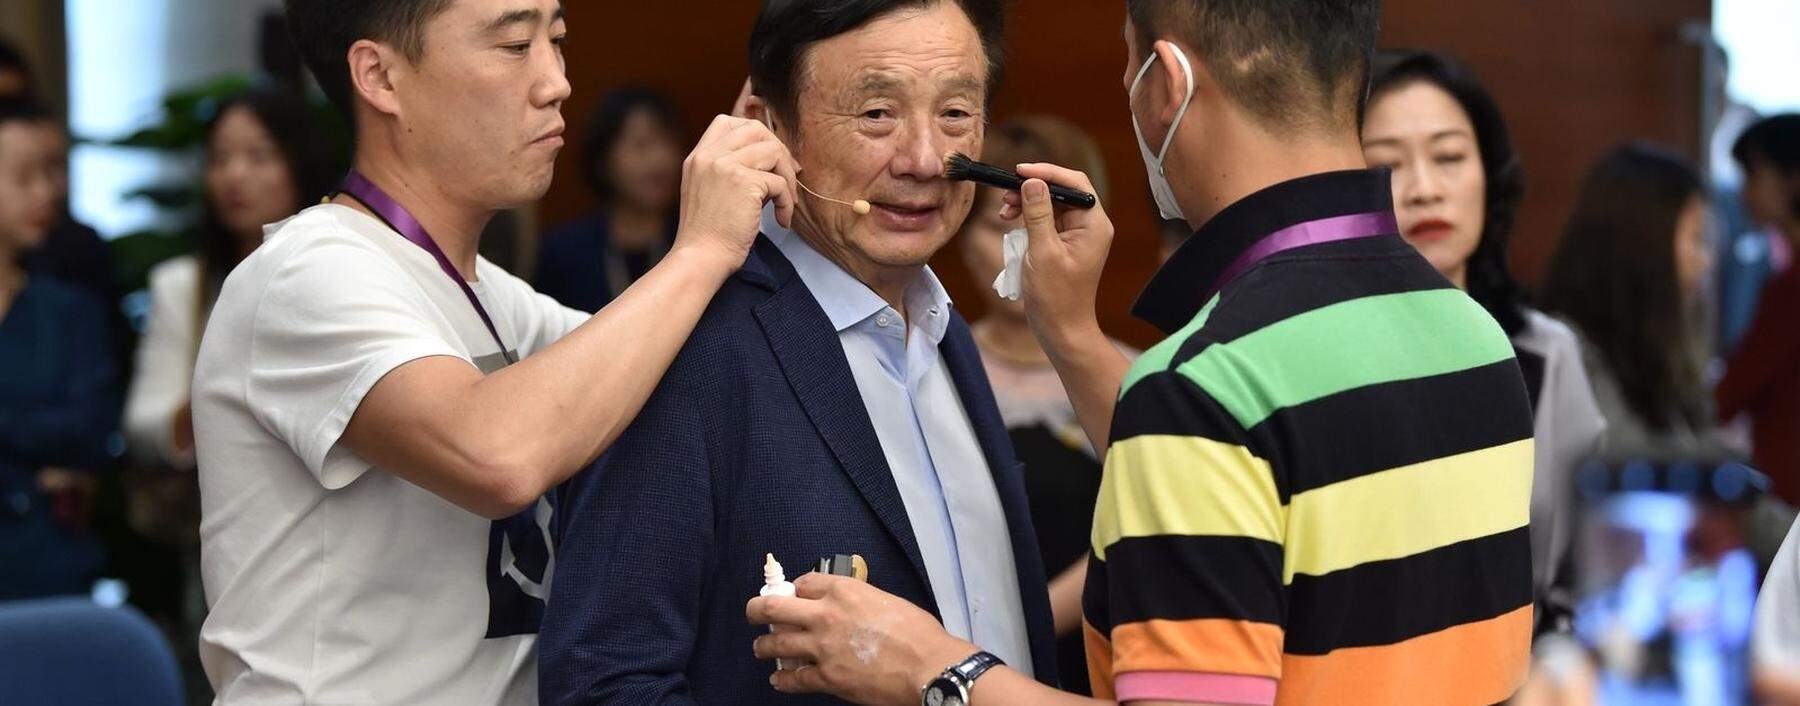 Der 75-jährige Ren Zhengfei leitet de facto Huawei. Unklar ist jedoch, wer bei der Eigentümerschaft das Sagen hat.